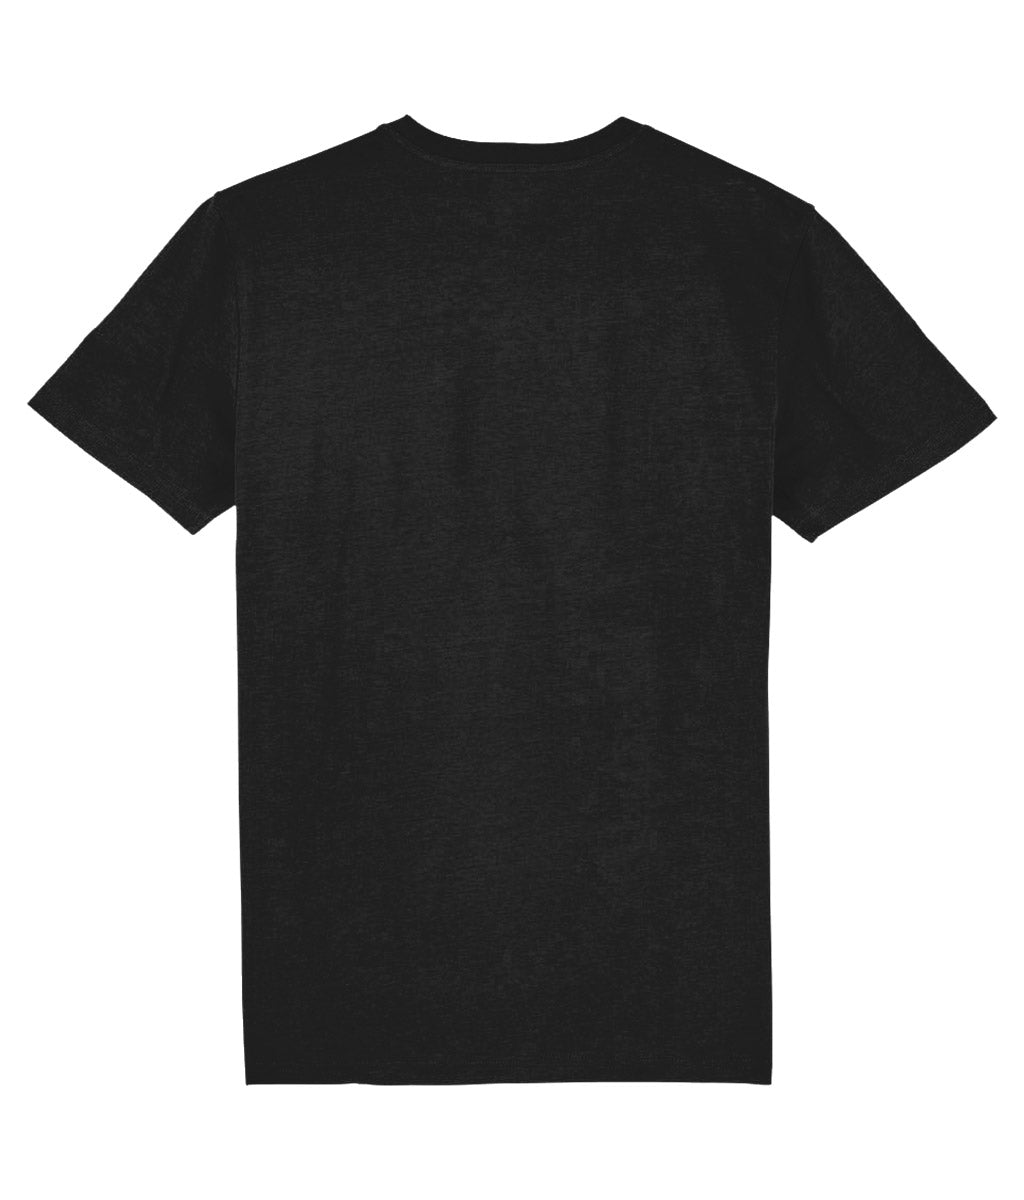 Sherlock Bones "Skull Stamp" T-Shirt (Black/White)